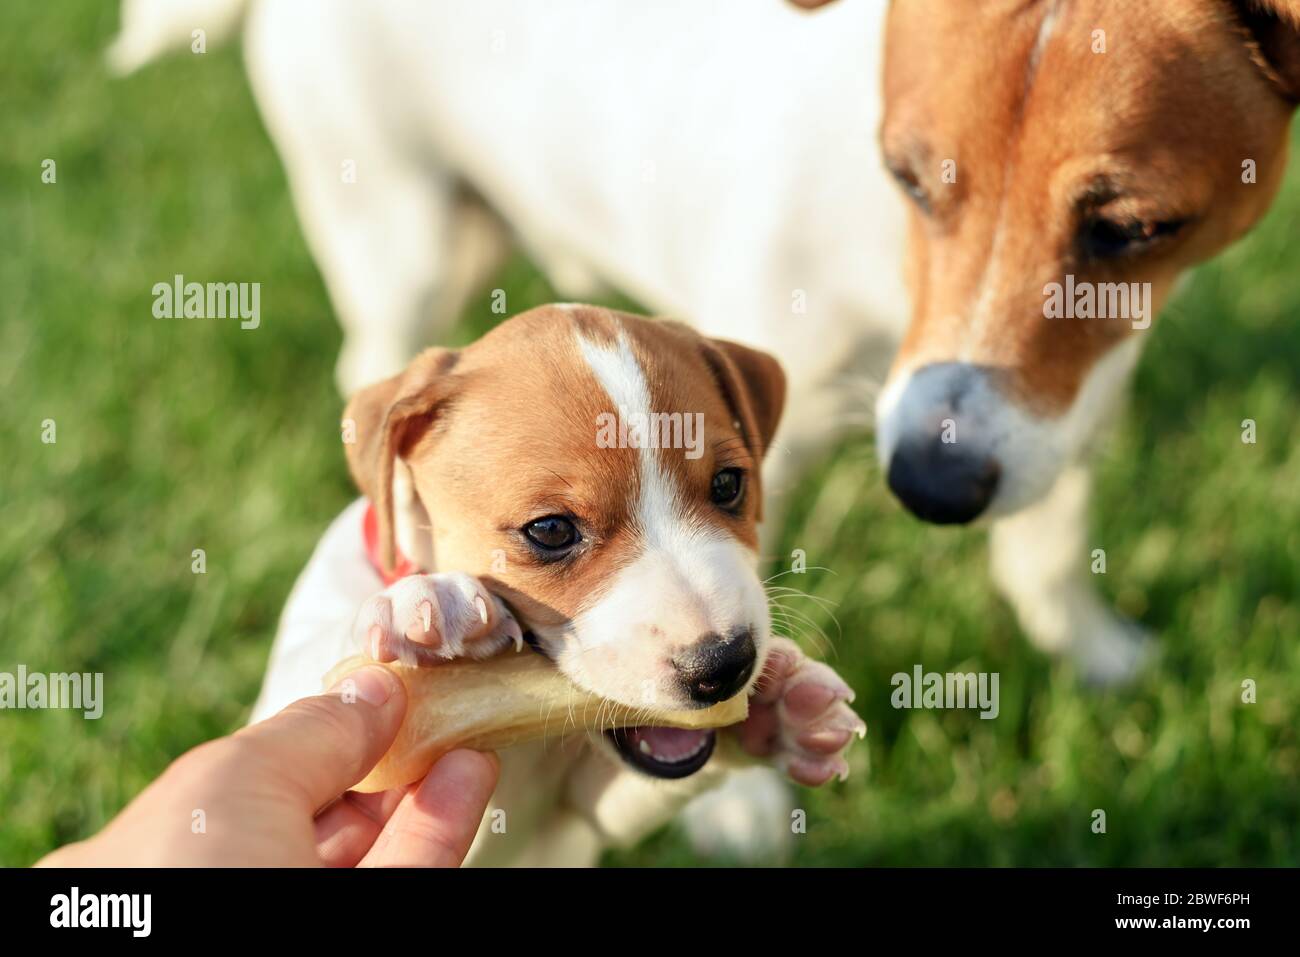 Un petit chien blanc chiot race Jack Russel Terrier avec son père et le premier os sur la pelouse verte. Photographie de chiens et d'animaux de compagnie Banque D'Images